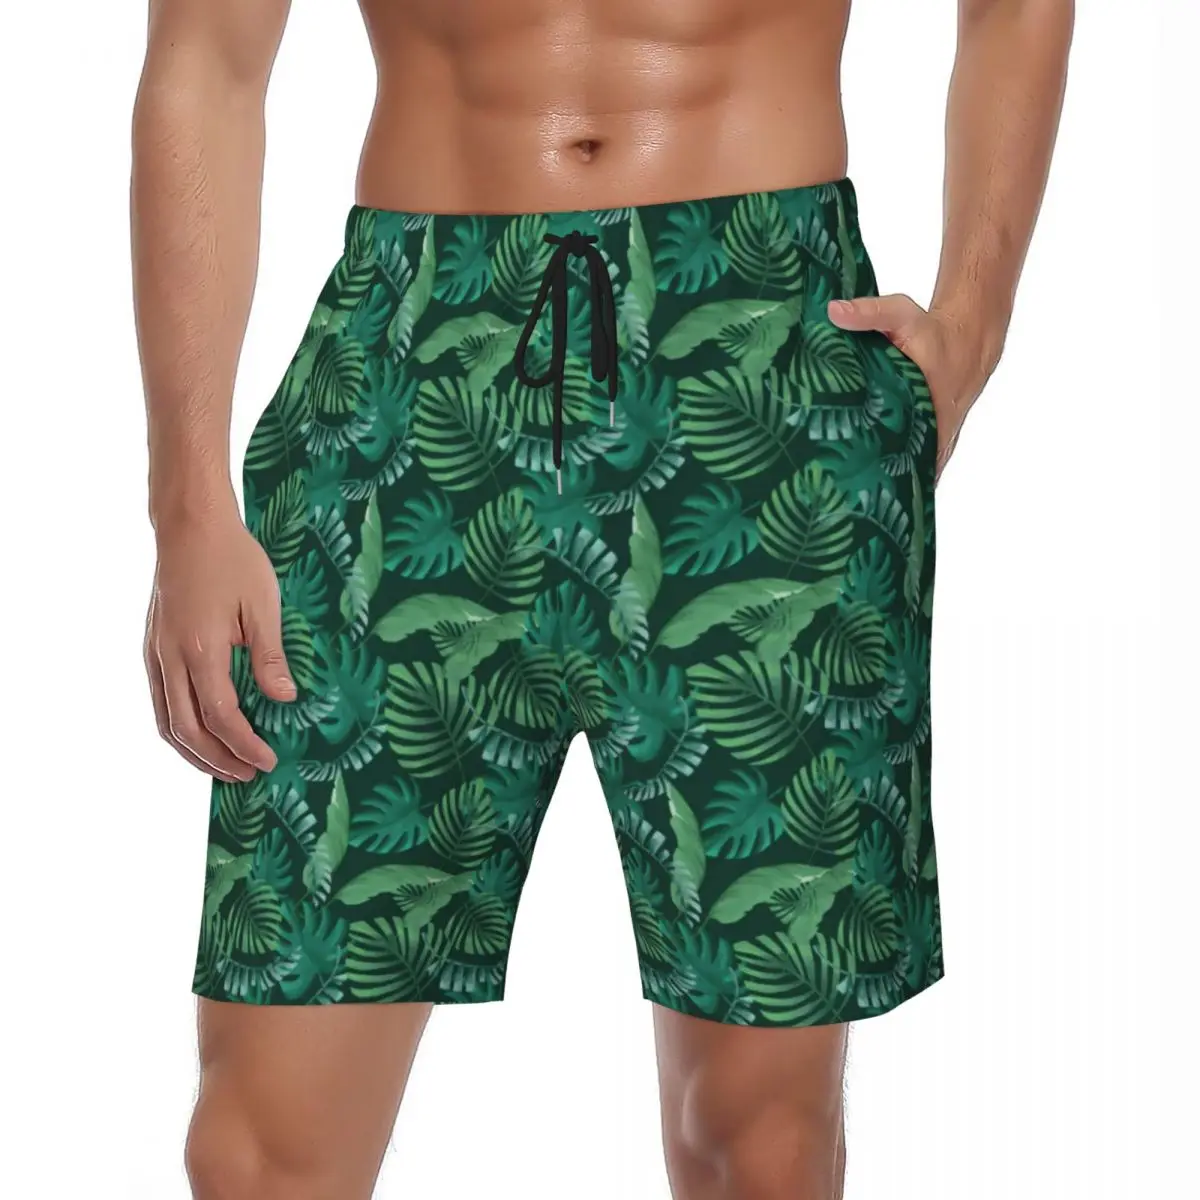 

Мужские пляжные шорты с зелеными пальмовыми листьями, Гавайские плавки с тропическим принтом листьев, быстросохнущие спортивные шорты для фитнеса